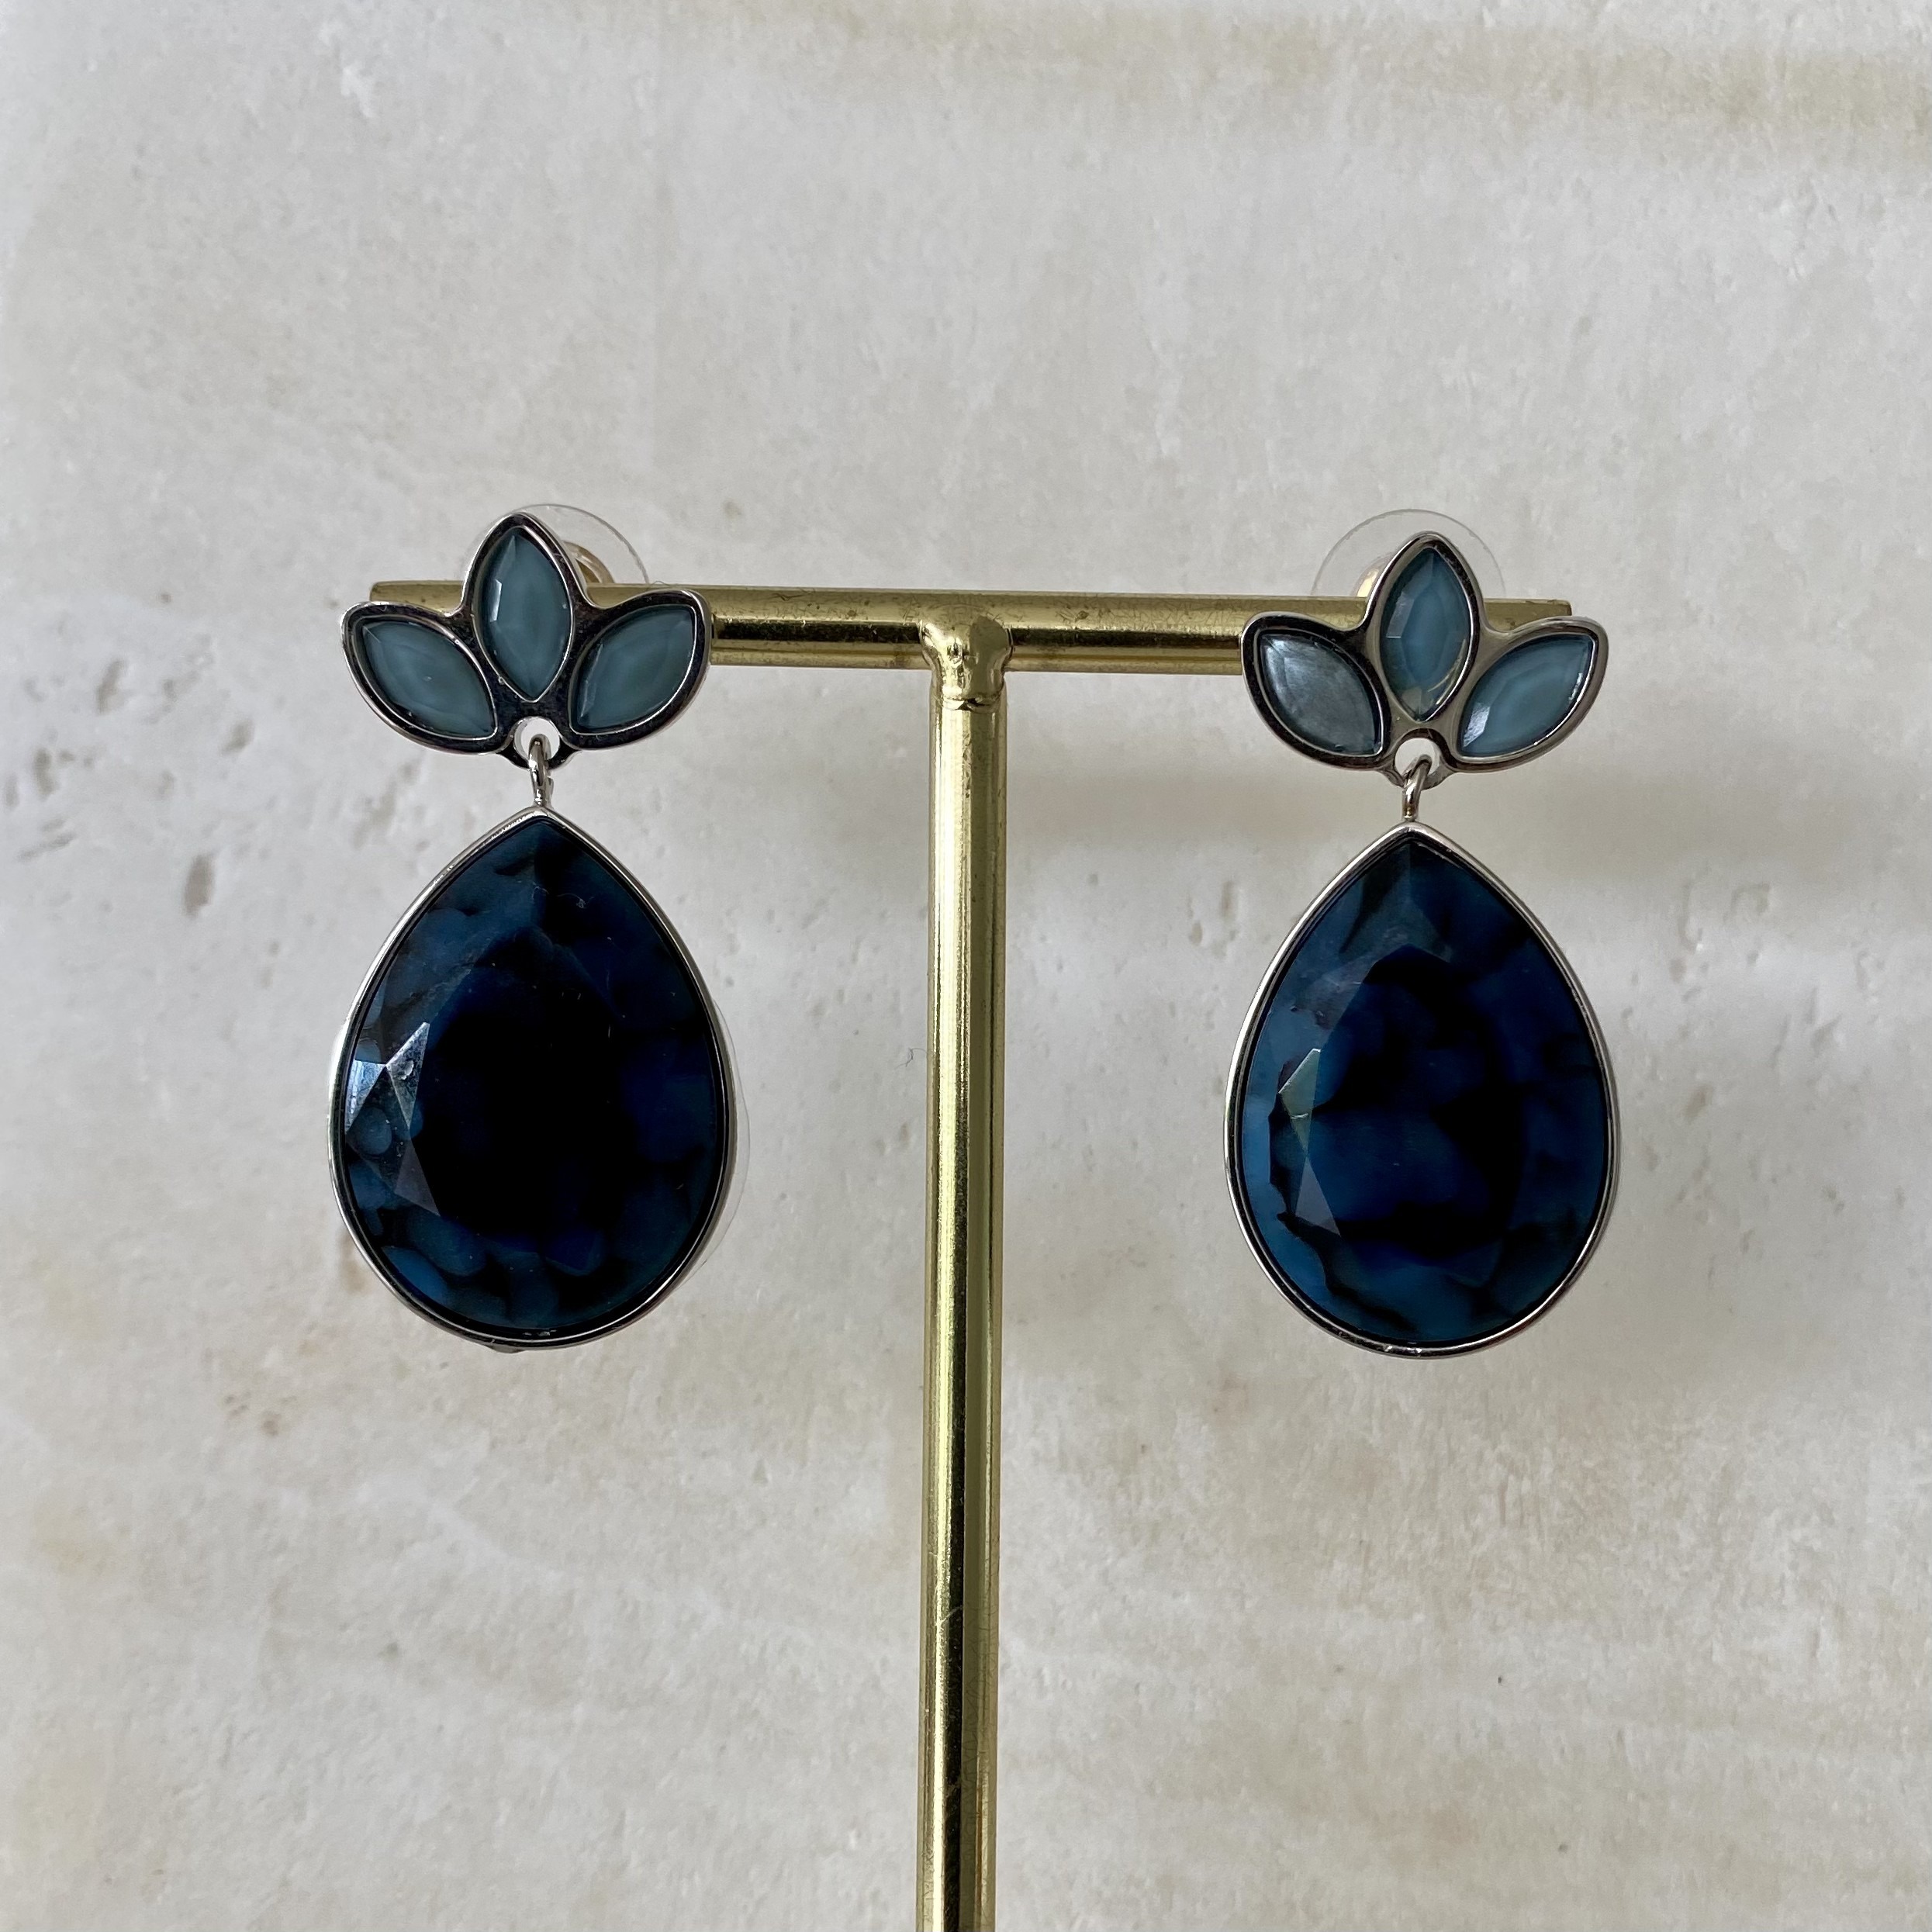 Navette Blue earrings